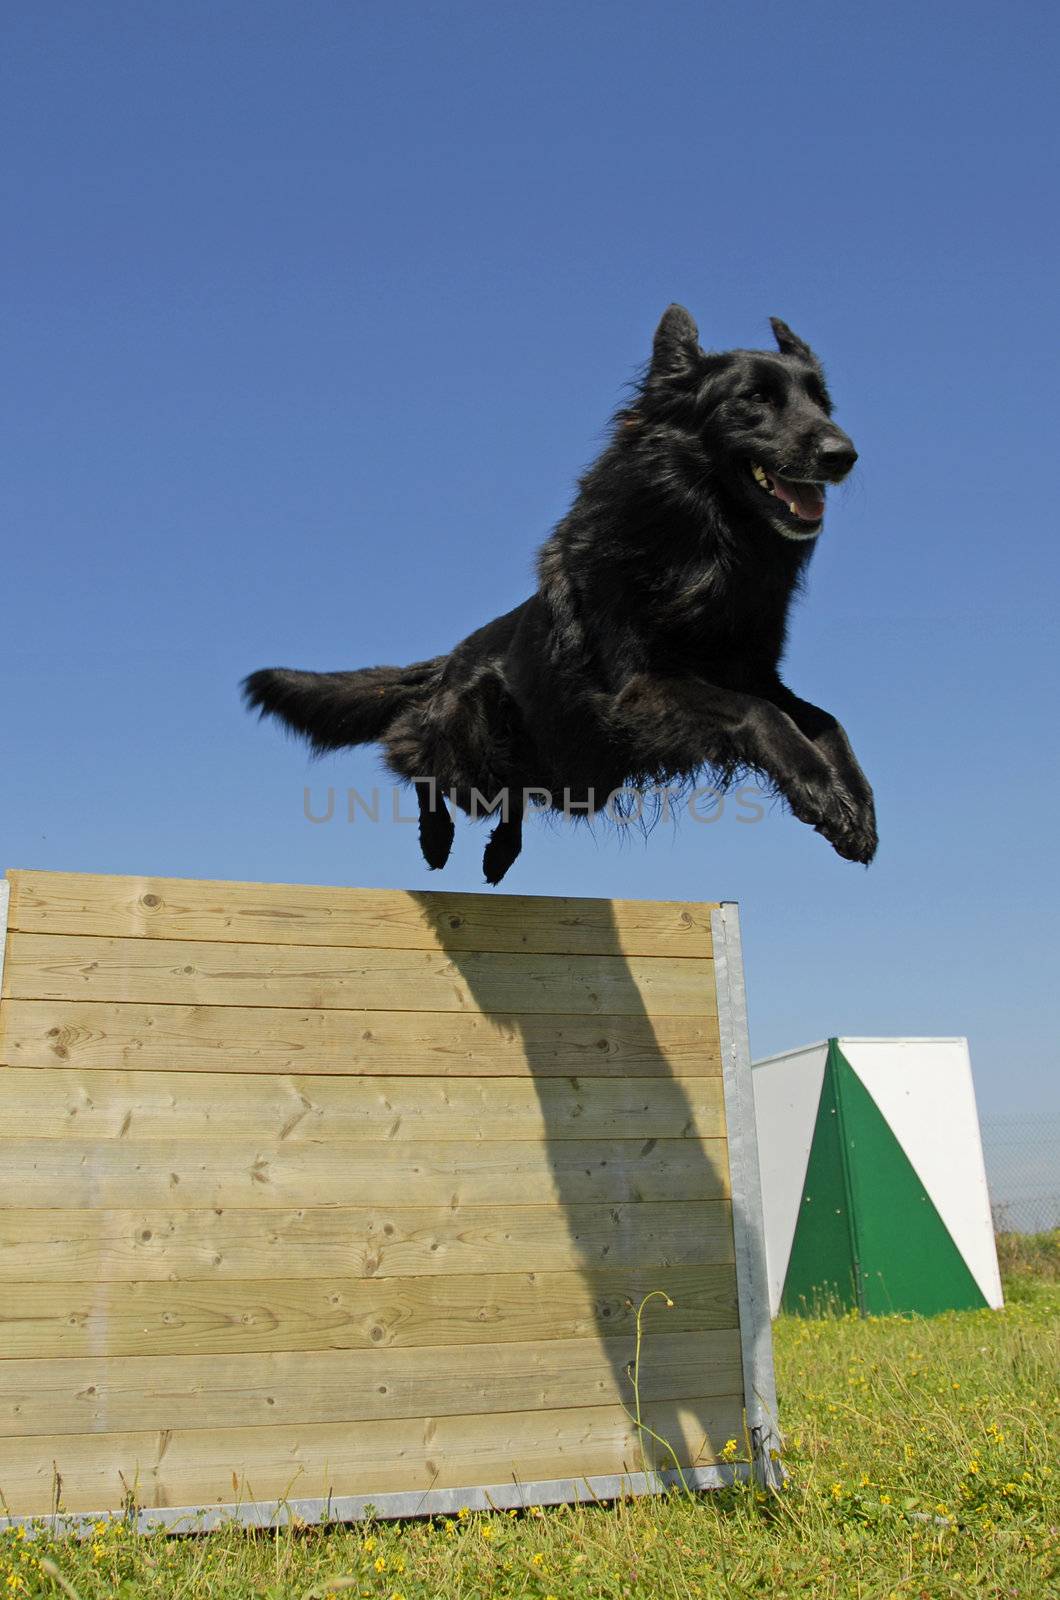 jumping black dog by cynoclub